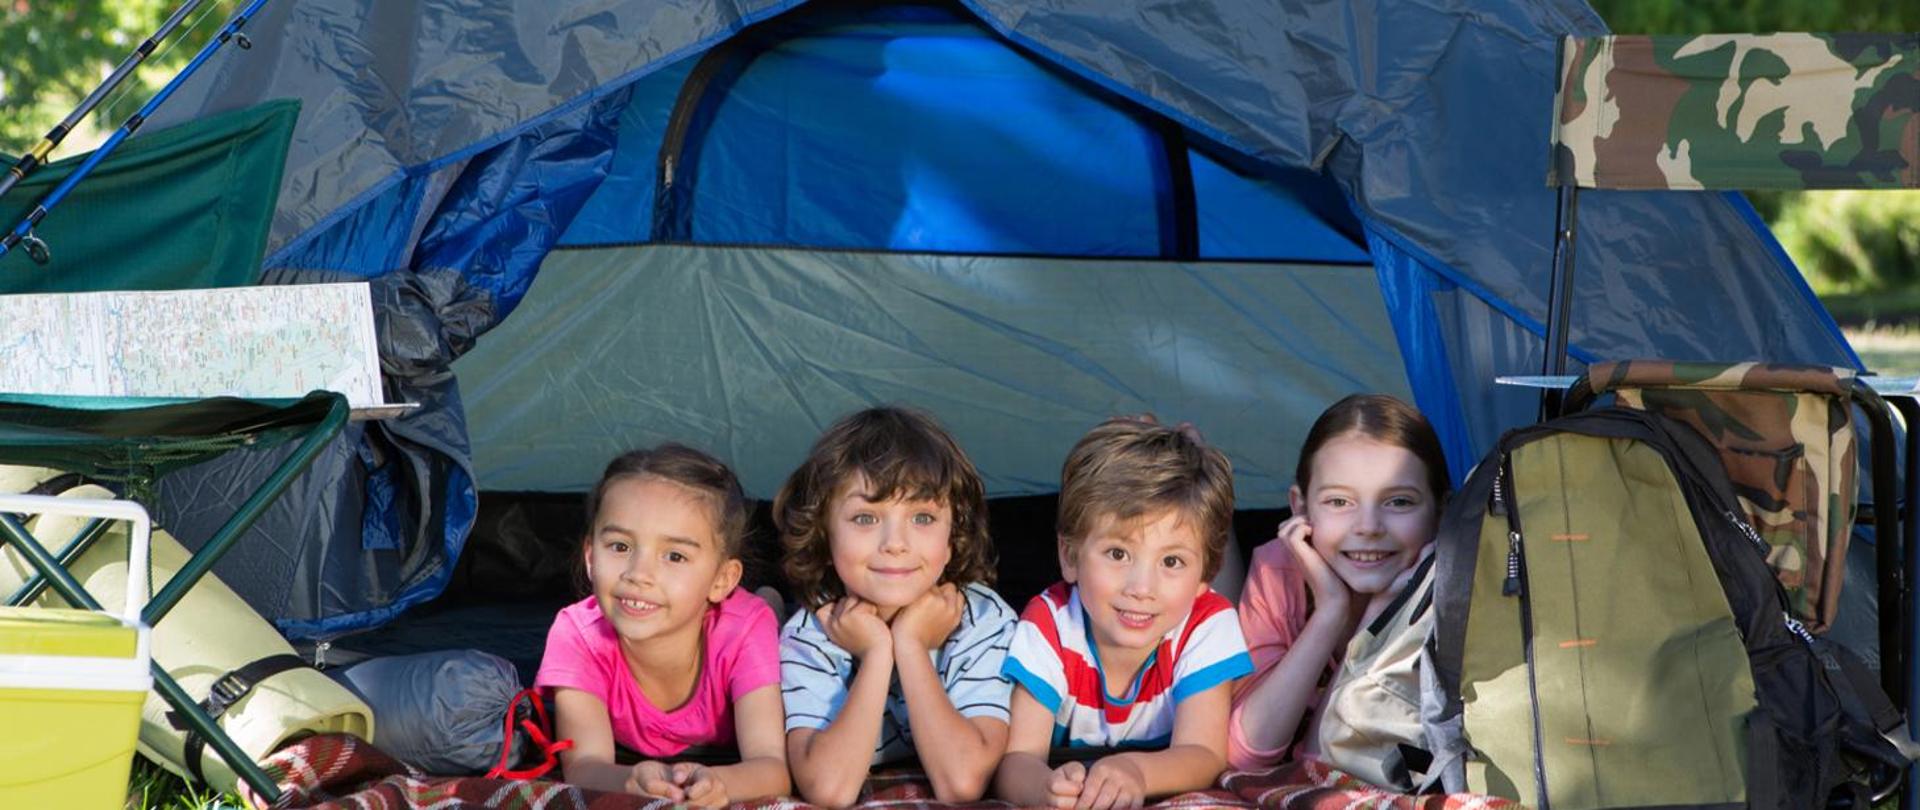 Czwórka uśmiechniętych dzieci leżących w niebieskim namiocie